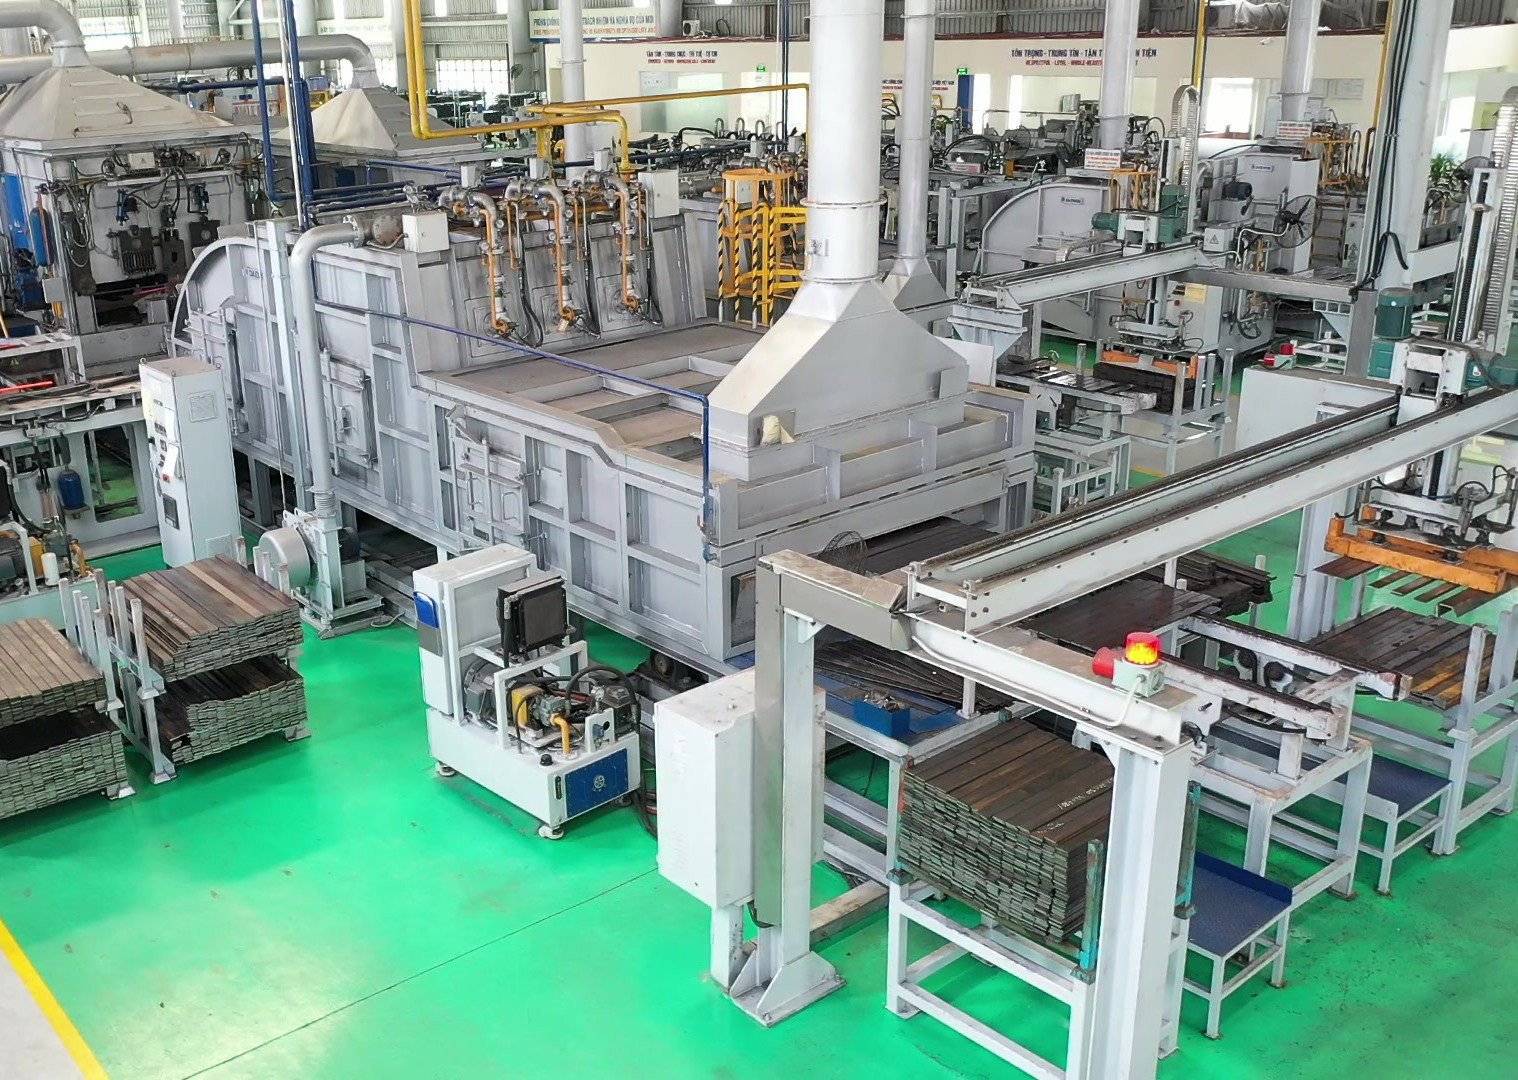 Dây chuyền sản xuất cơ khí và công nghiệp hỗ trợ tại Chu Lai. Ảnh: T.D